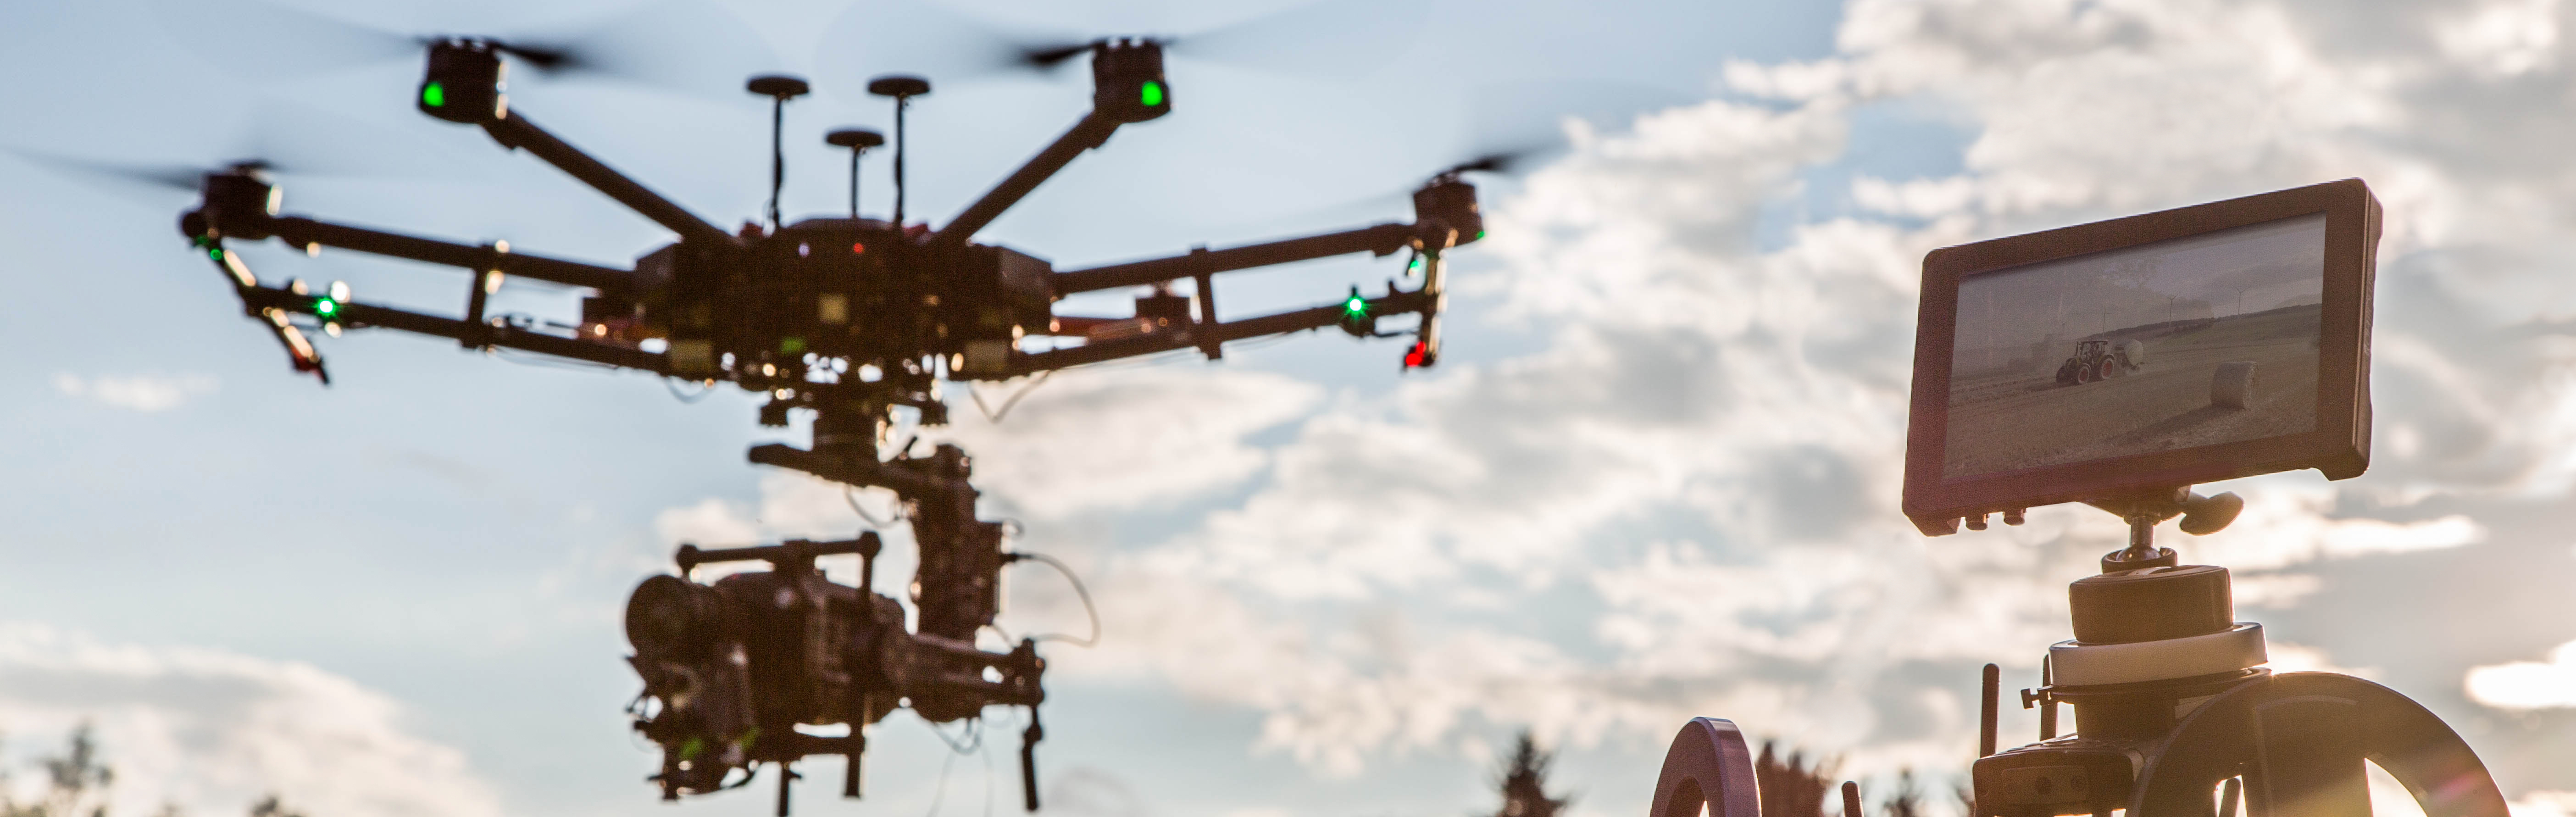 Aerial Cinematography drone pilot DJI Inspire drone munich bavaria castle neuschwanstein bayern drohnenteam Aerial Cinematography drone pilot